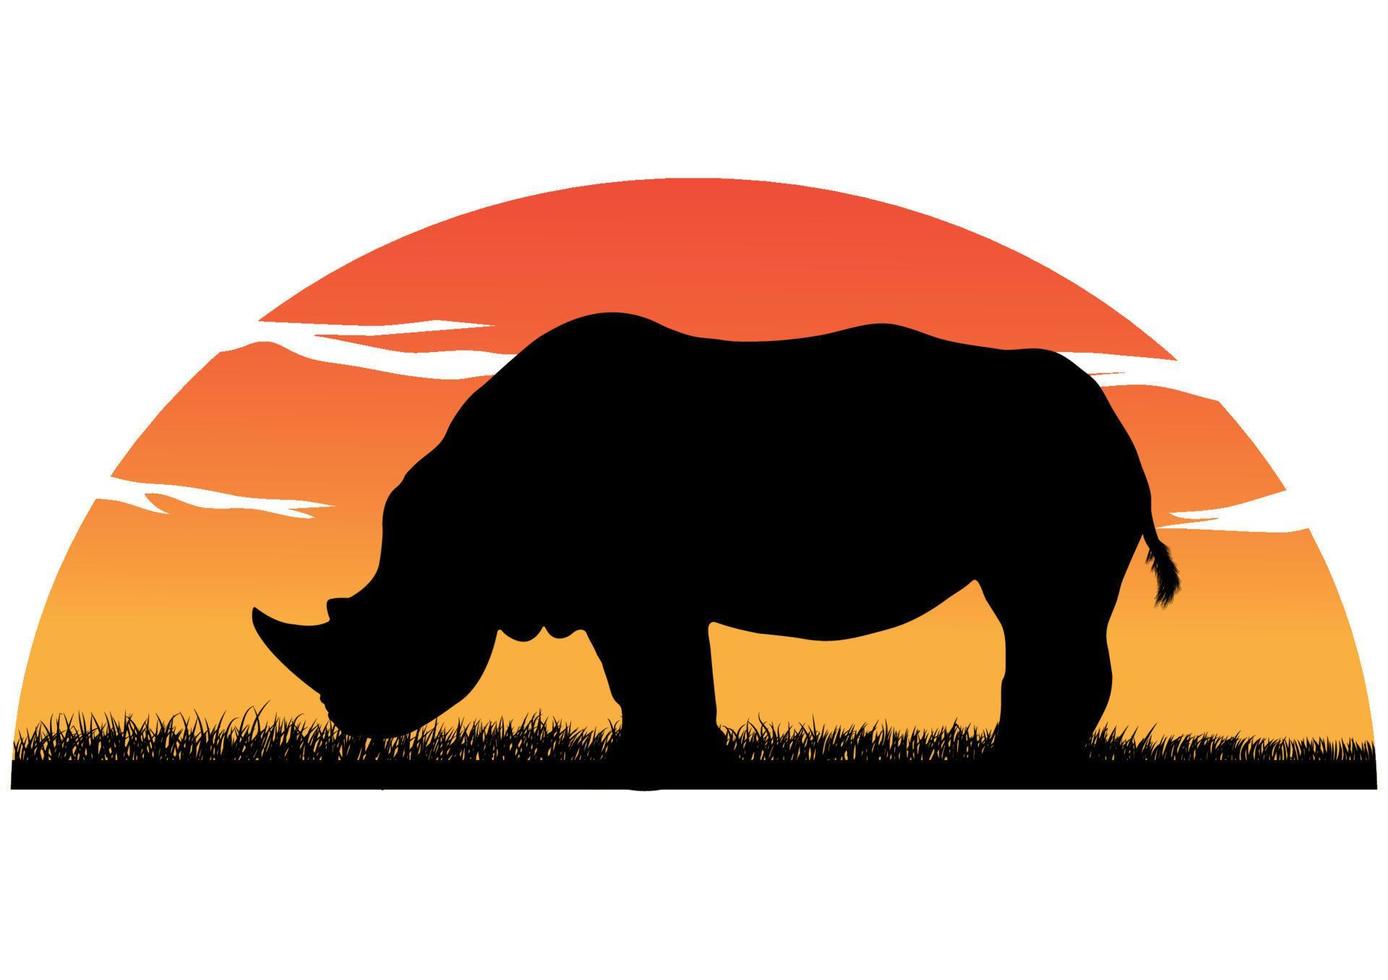 gráficos desenhando a silhueta de um rinoceronte com ilustração vetorial de fundo por do sol isolado fundo branco vetor